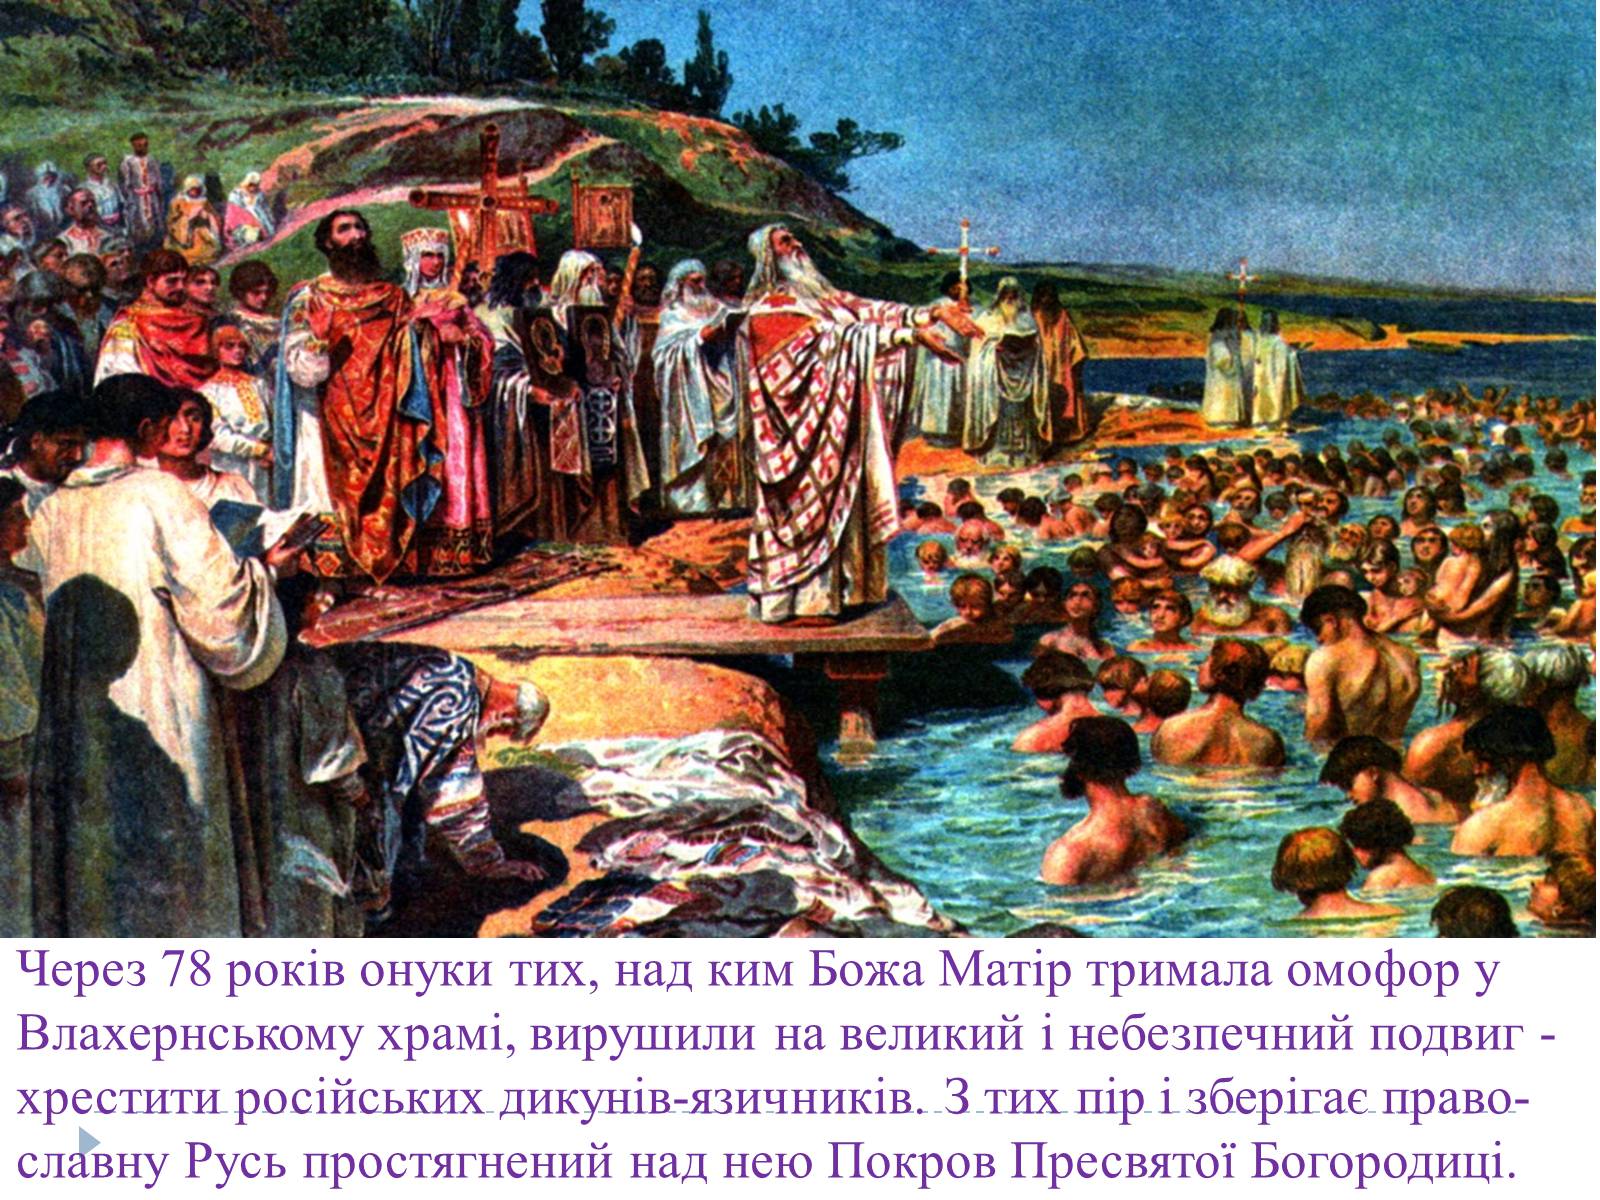 Восточные славяне принятие христианства. 988 Год принятие христианства на Руси.